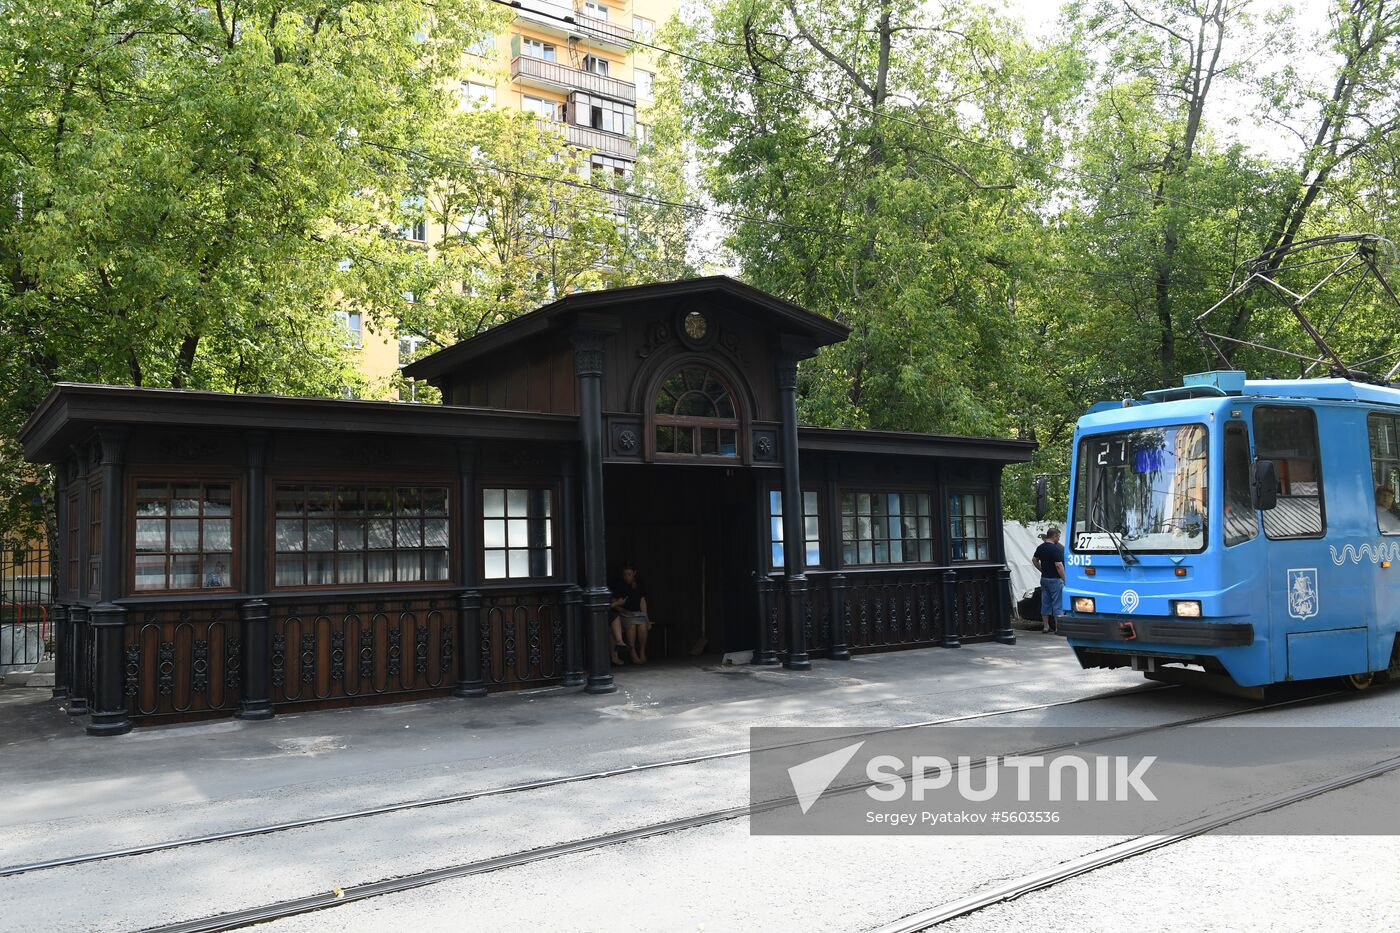 Oldest tram stop reopened after restoration